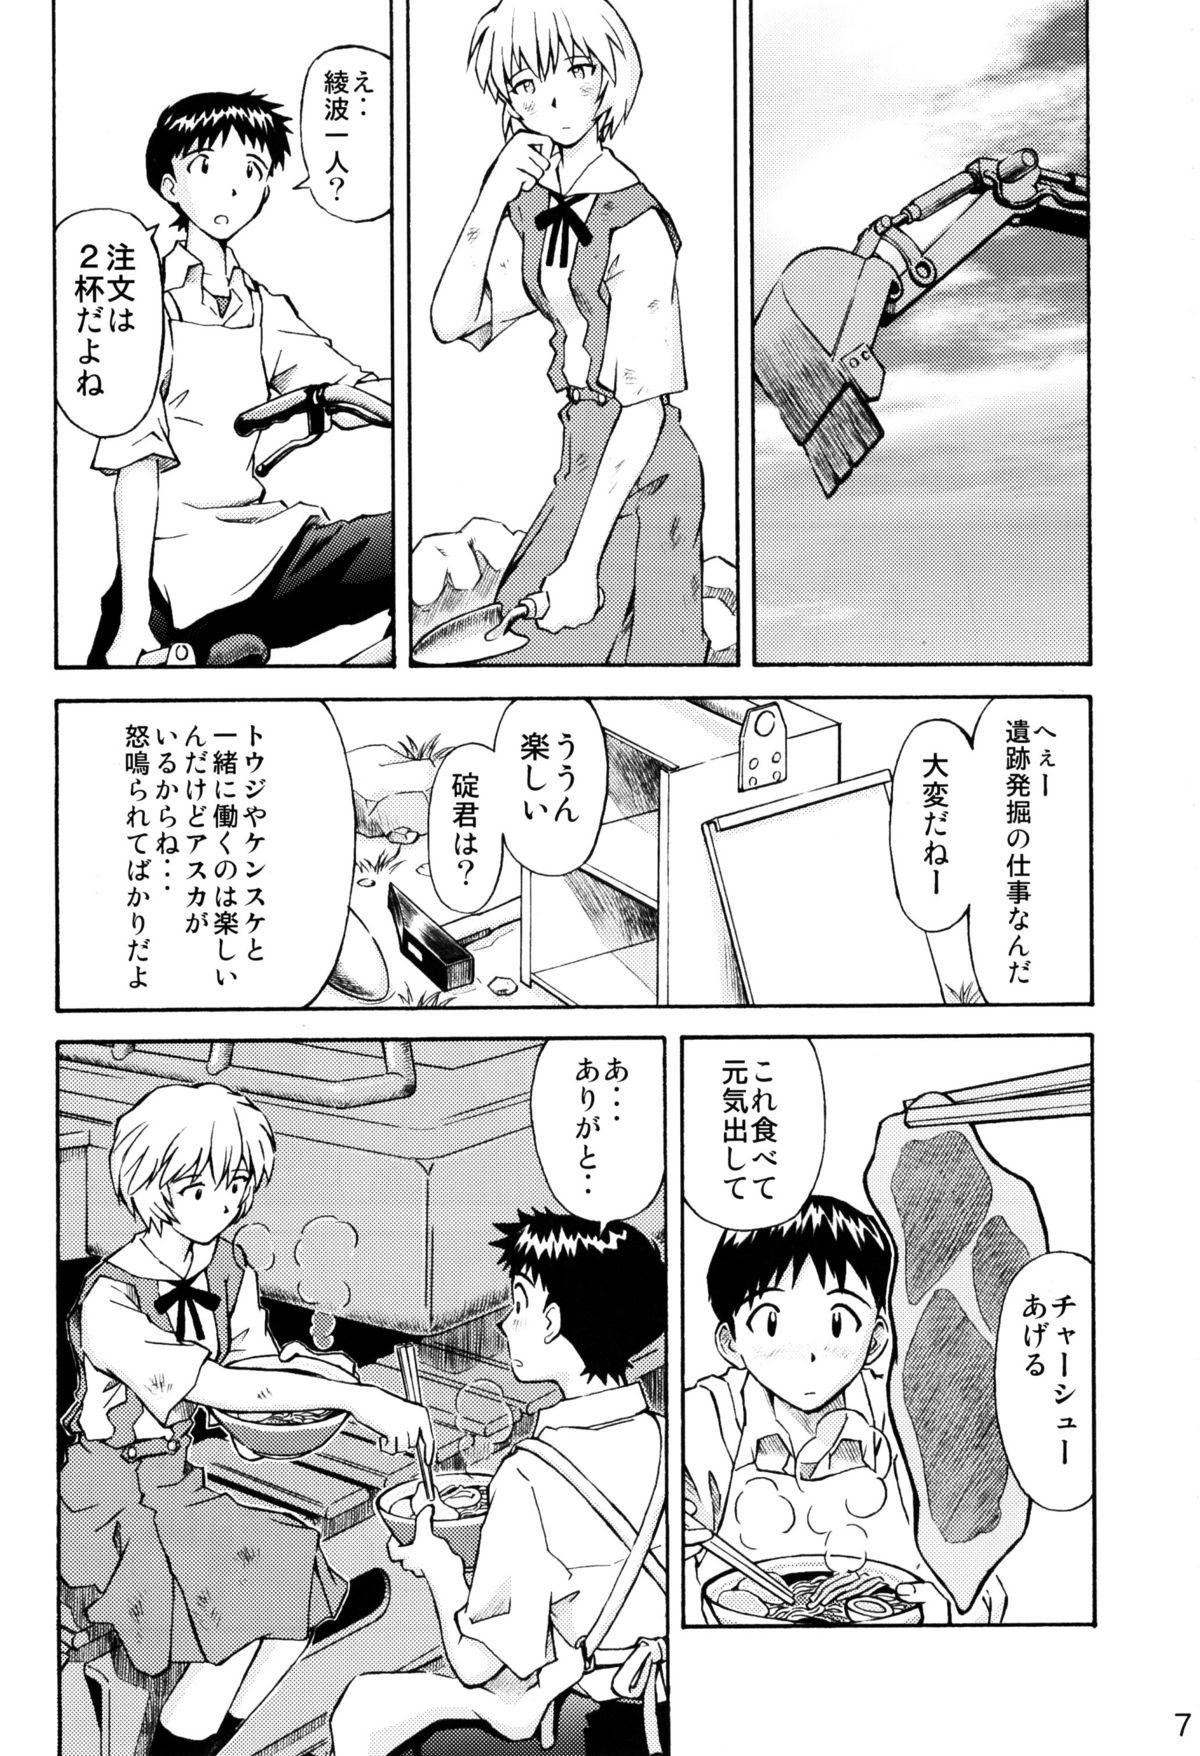 Stretch Asuka Trial 2 - Neon genesis evangelion Teamskeet - Page 6